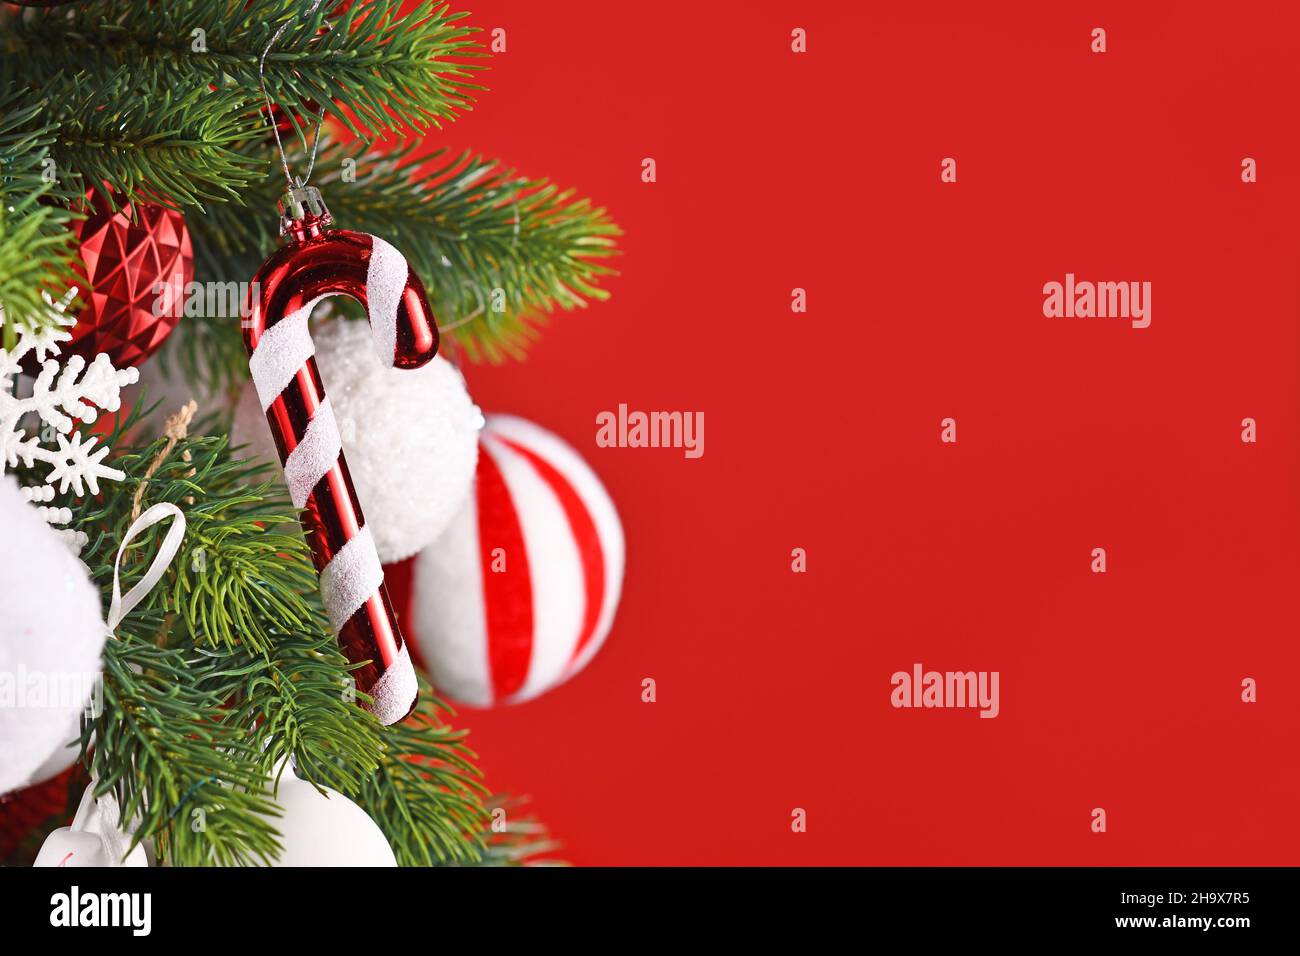 Zuckerrohr Weihnachtsbaum Ornament hängt von Zweig vor rotem Hintergrund Stockfoto